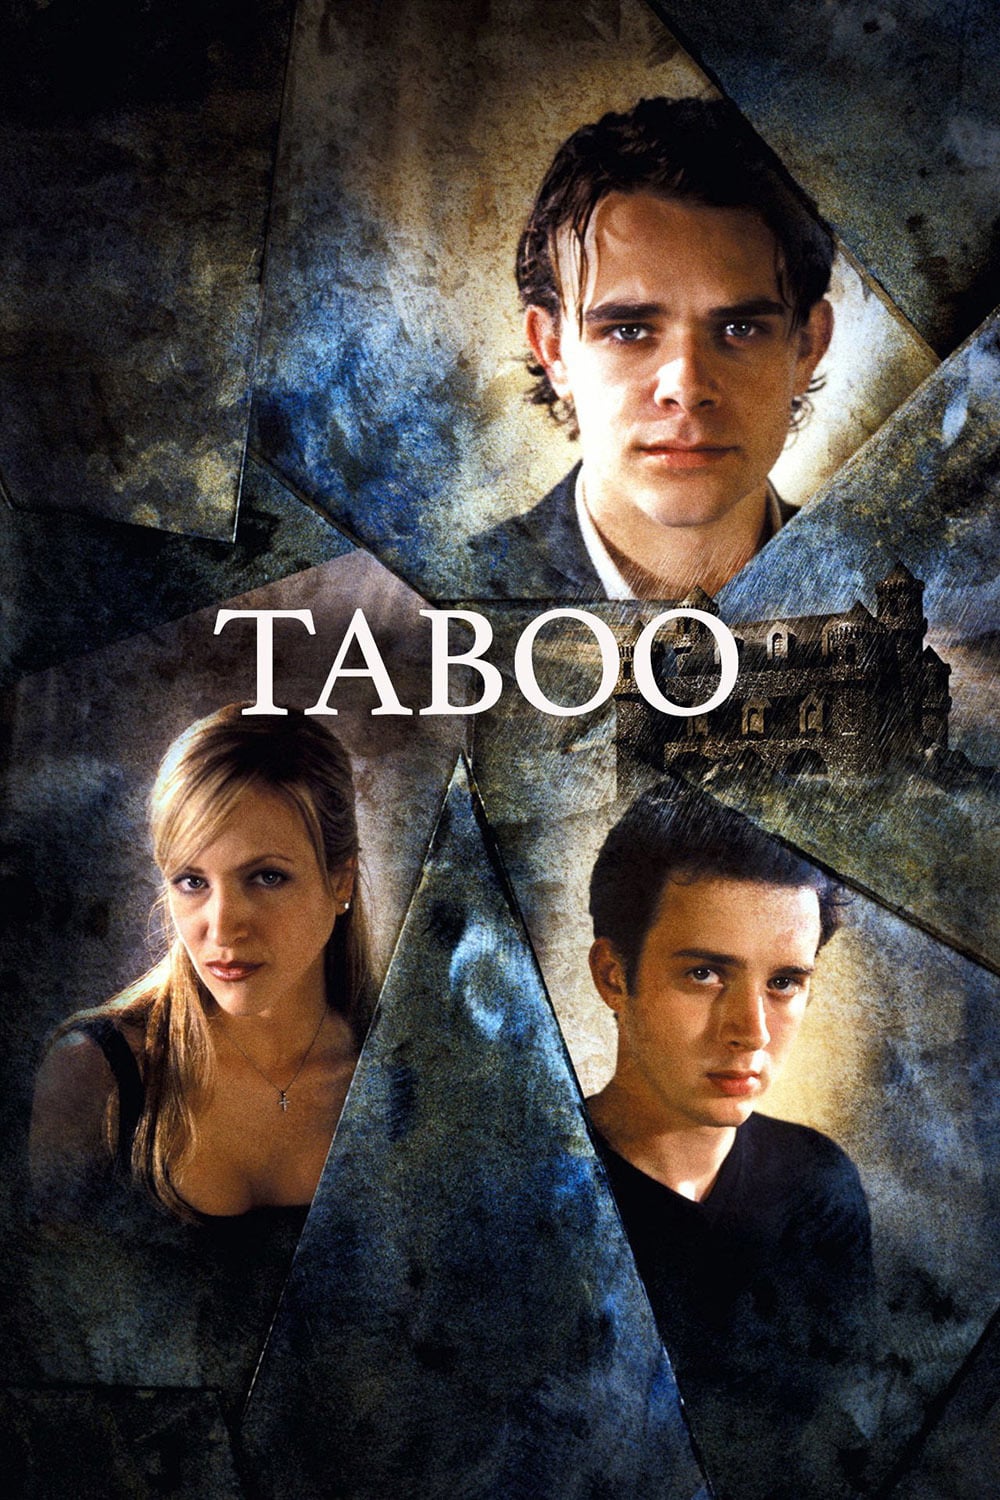 Taboo 2 Watch Online last pleasure